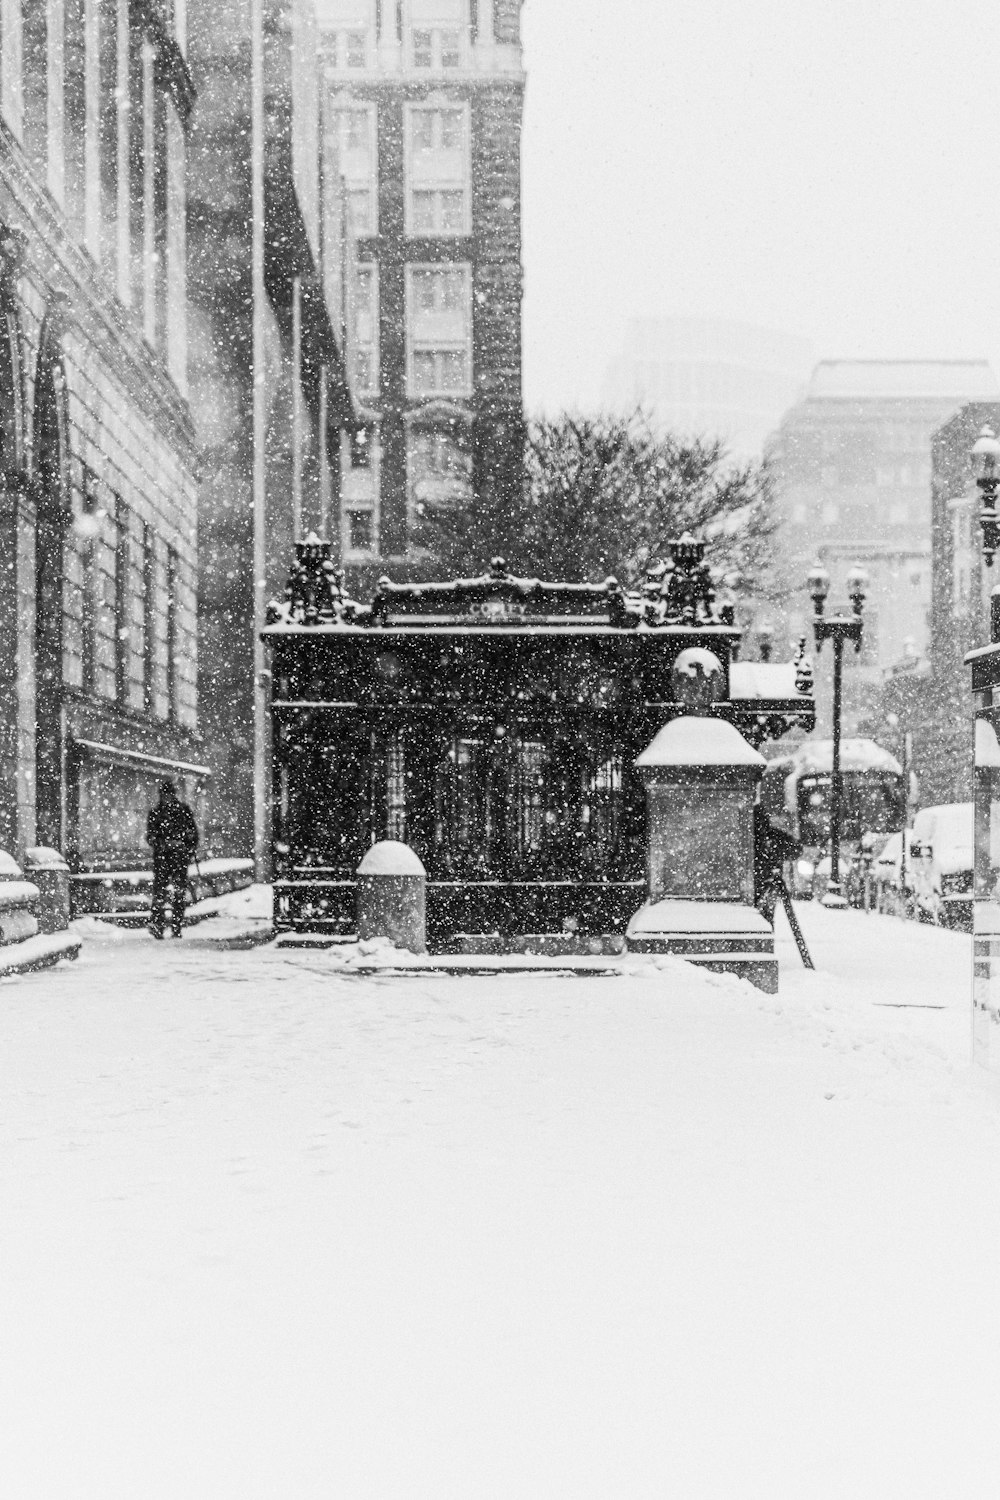 Una foto en blanco y negro de una calle nevada